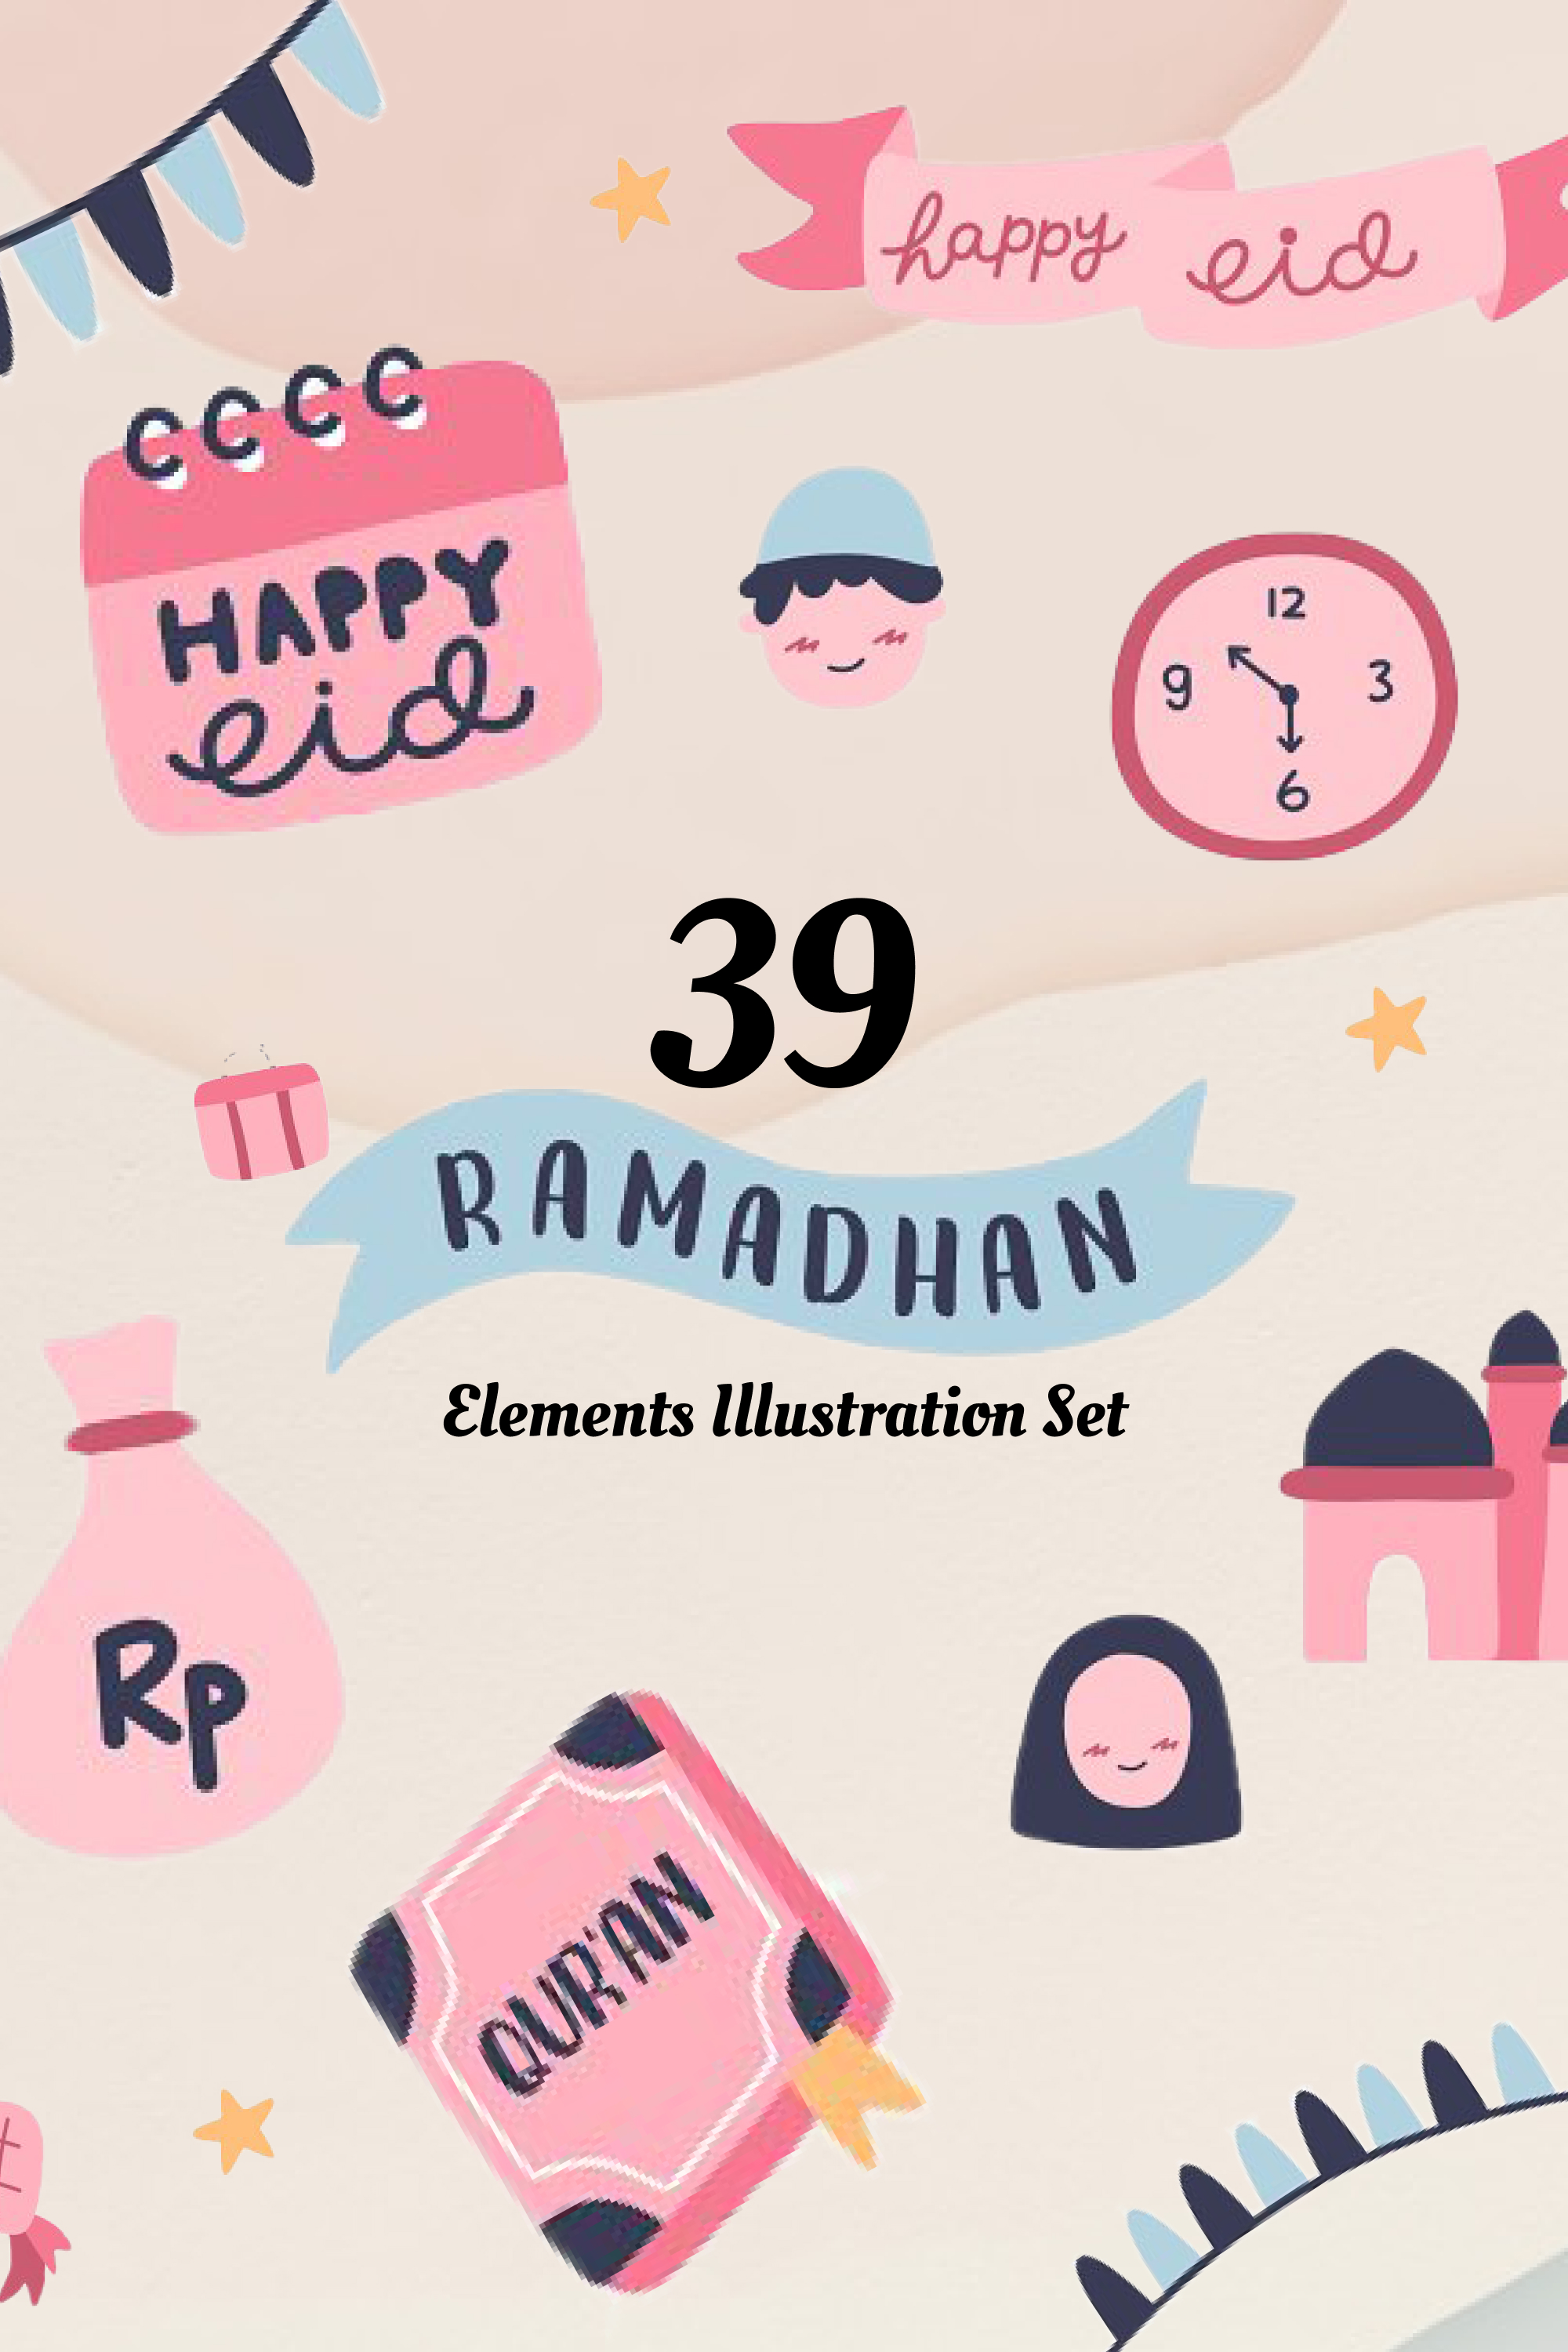 Ramadan elements illustration set of pinterest.